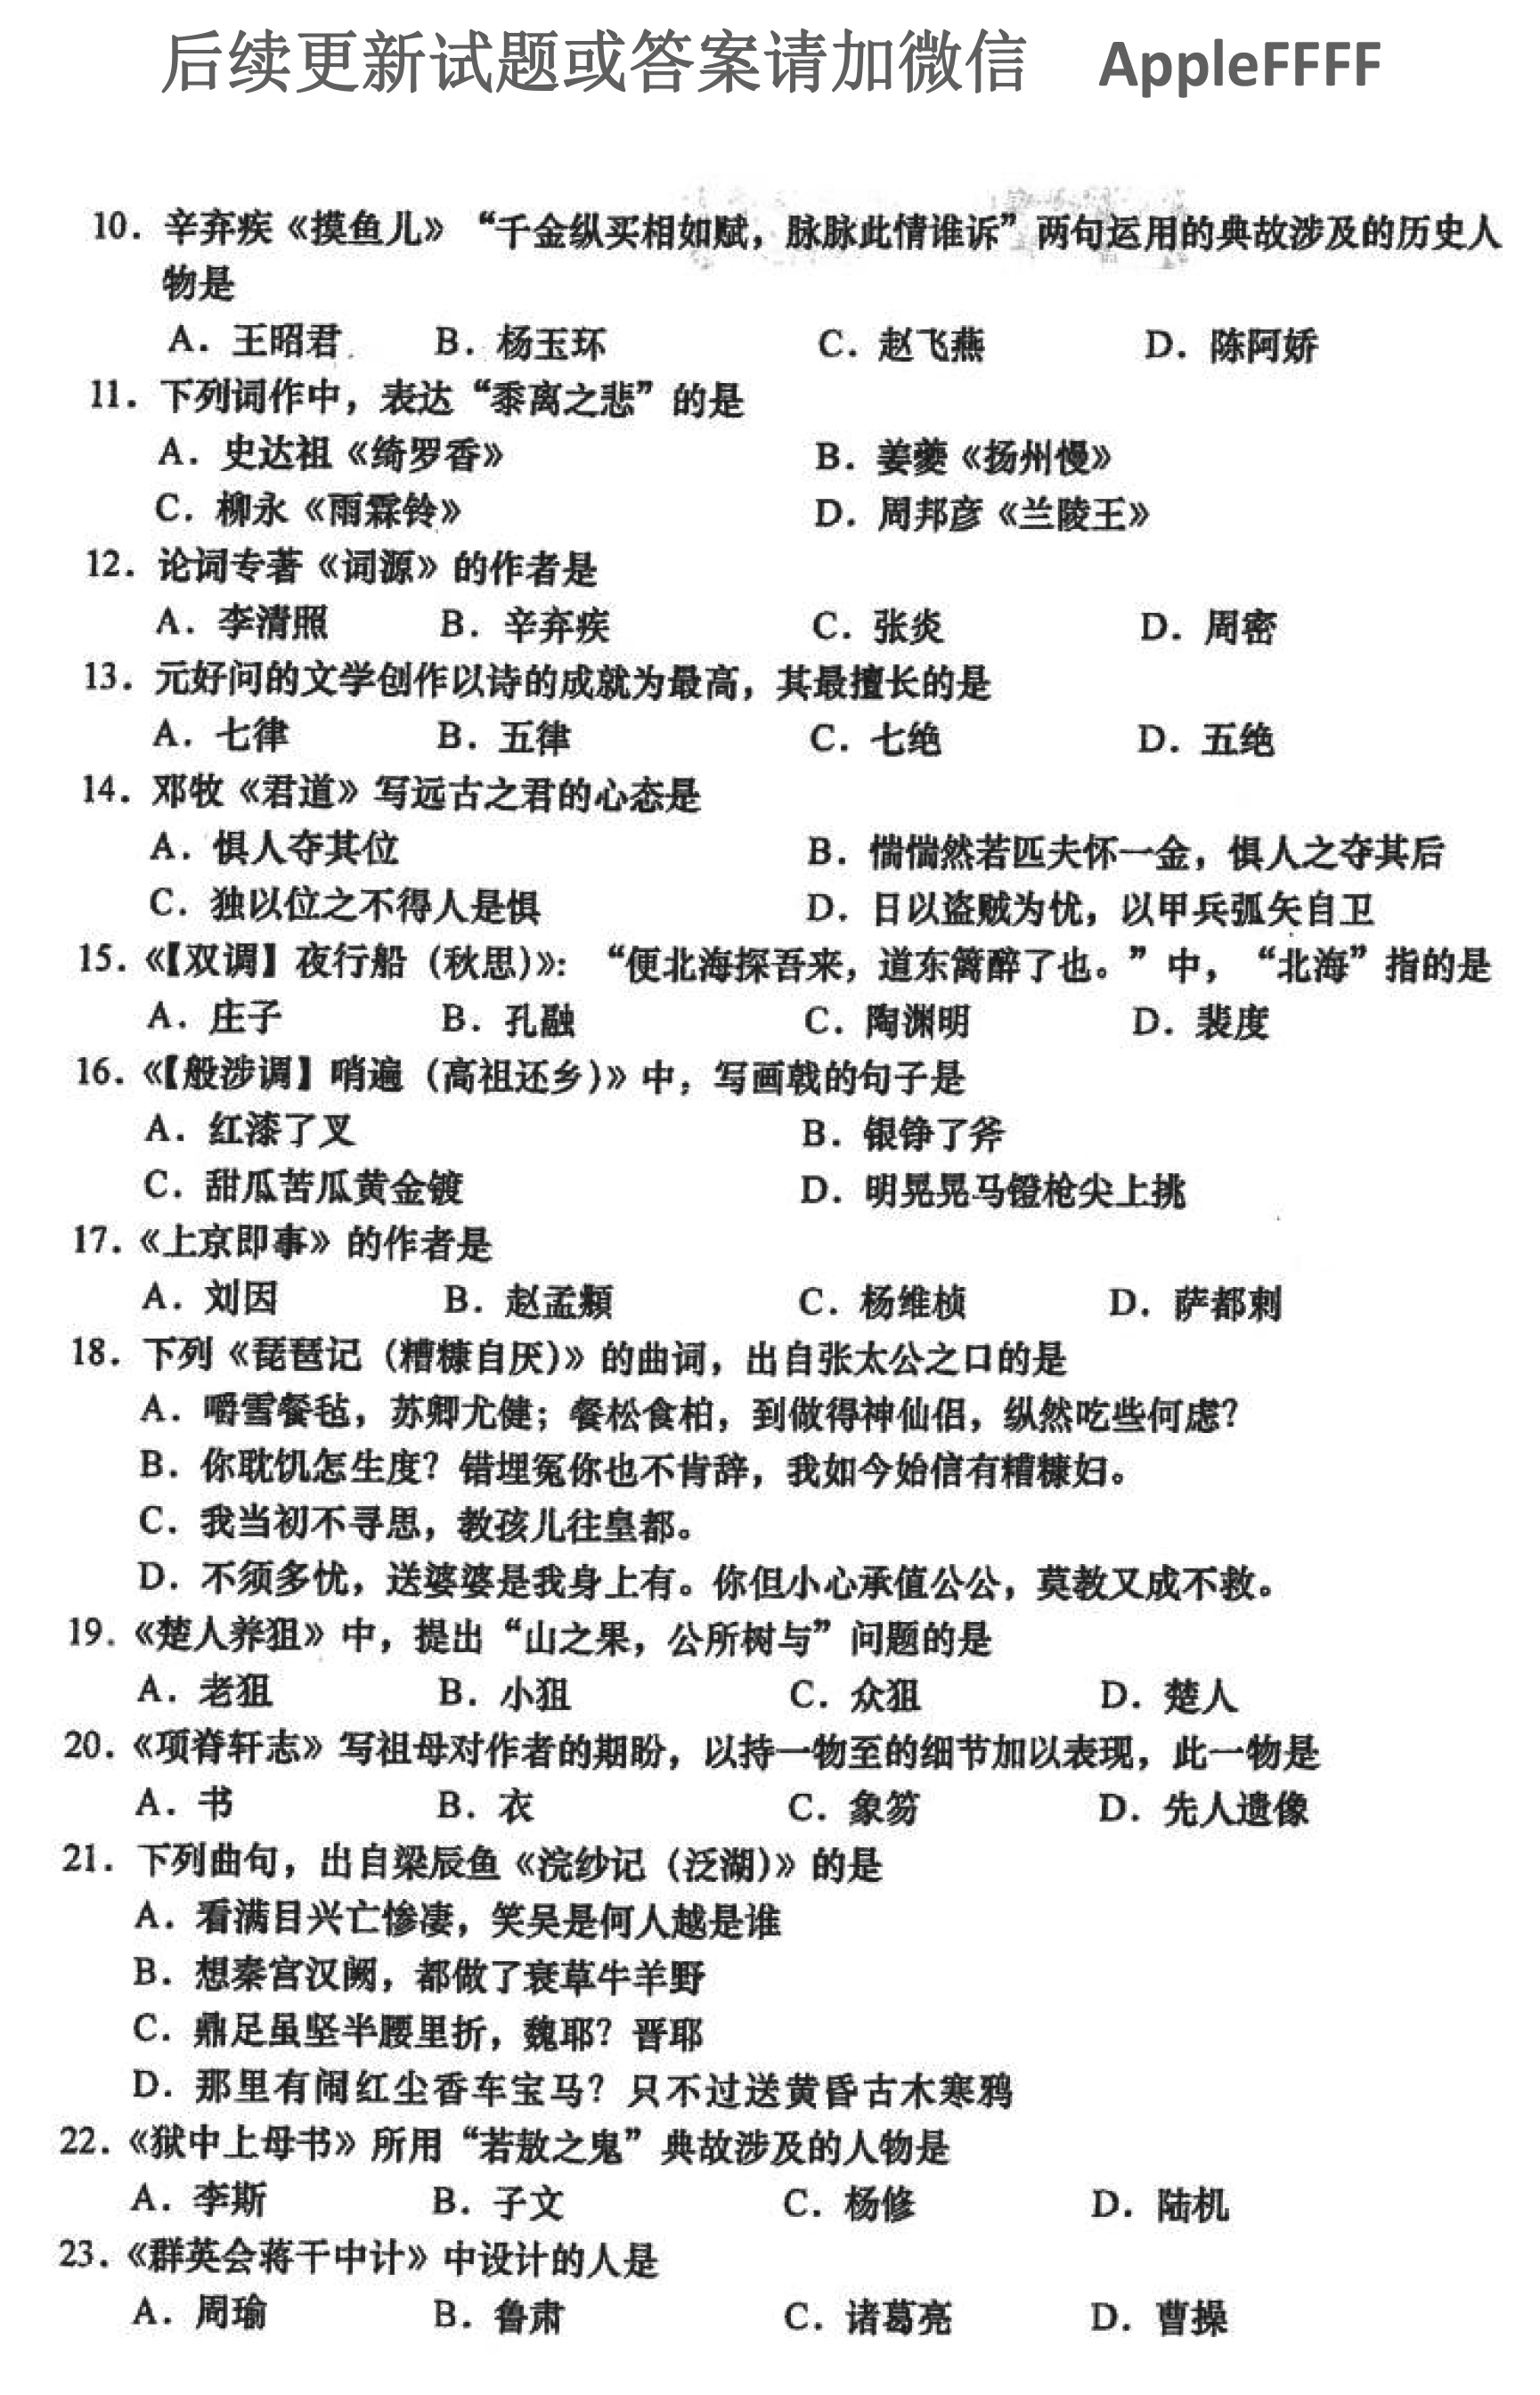 2021年10月贵州自考00533中国古代文学作品选(二)真题及答案